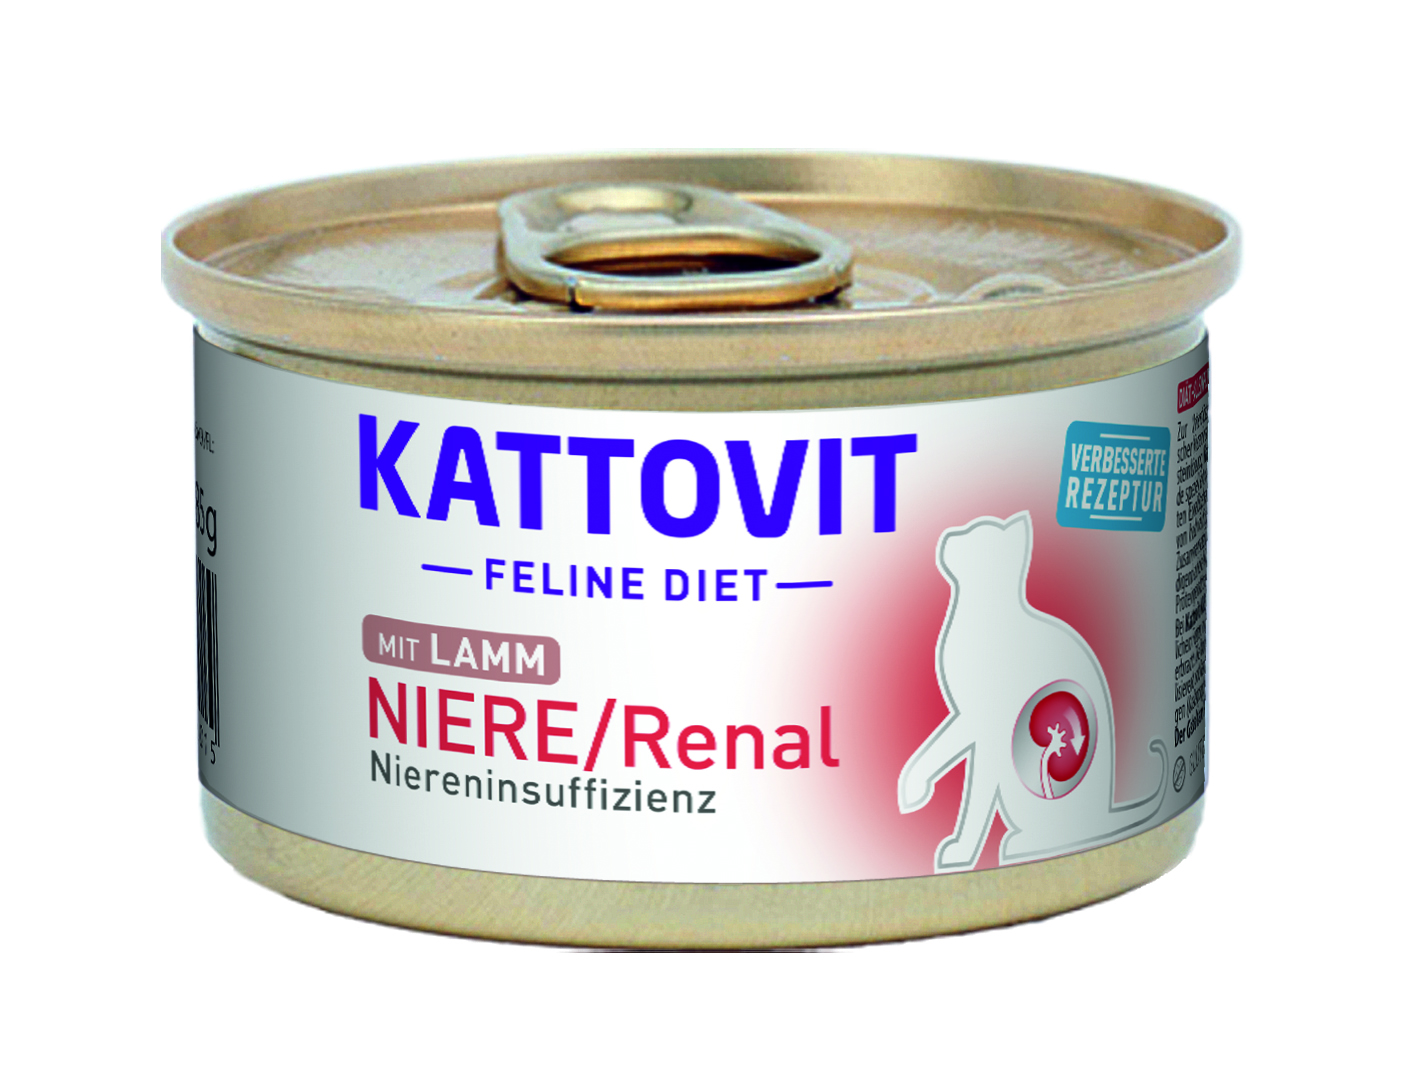 Kattovit Feline Diet Niere / Renal - bei Niereninsuffizienz. 8